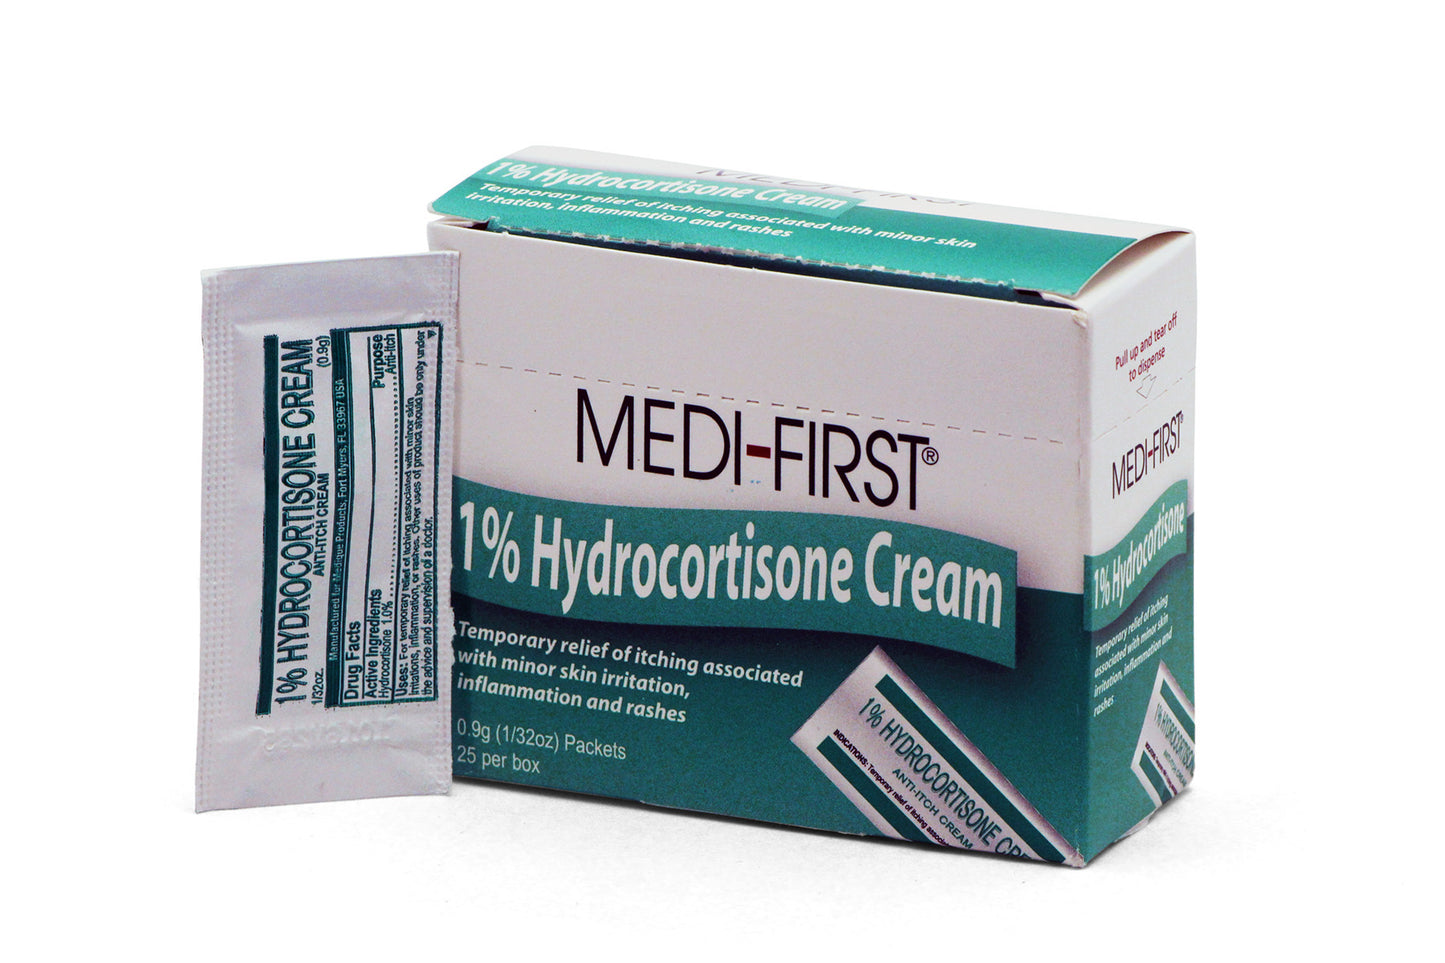 Hydrocortisone Cream 1%, 1/32oz Pkt